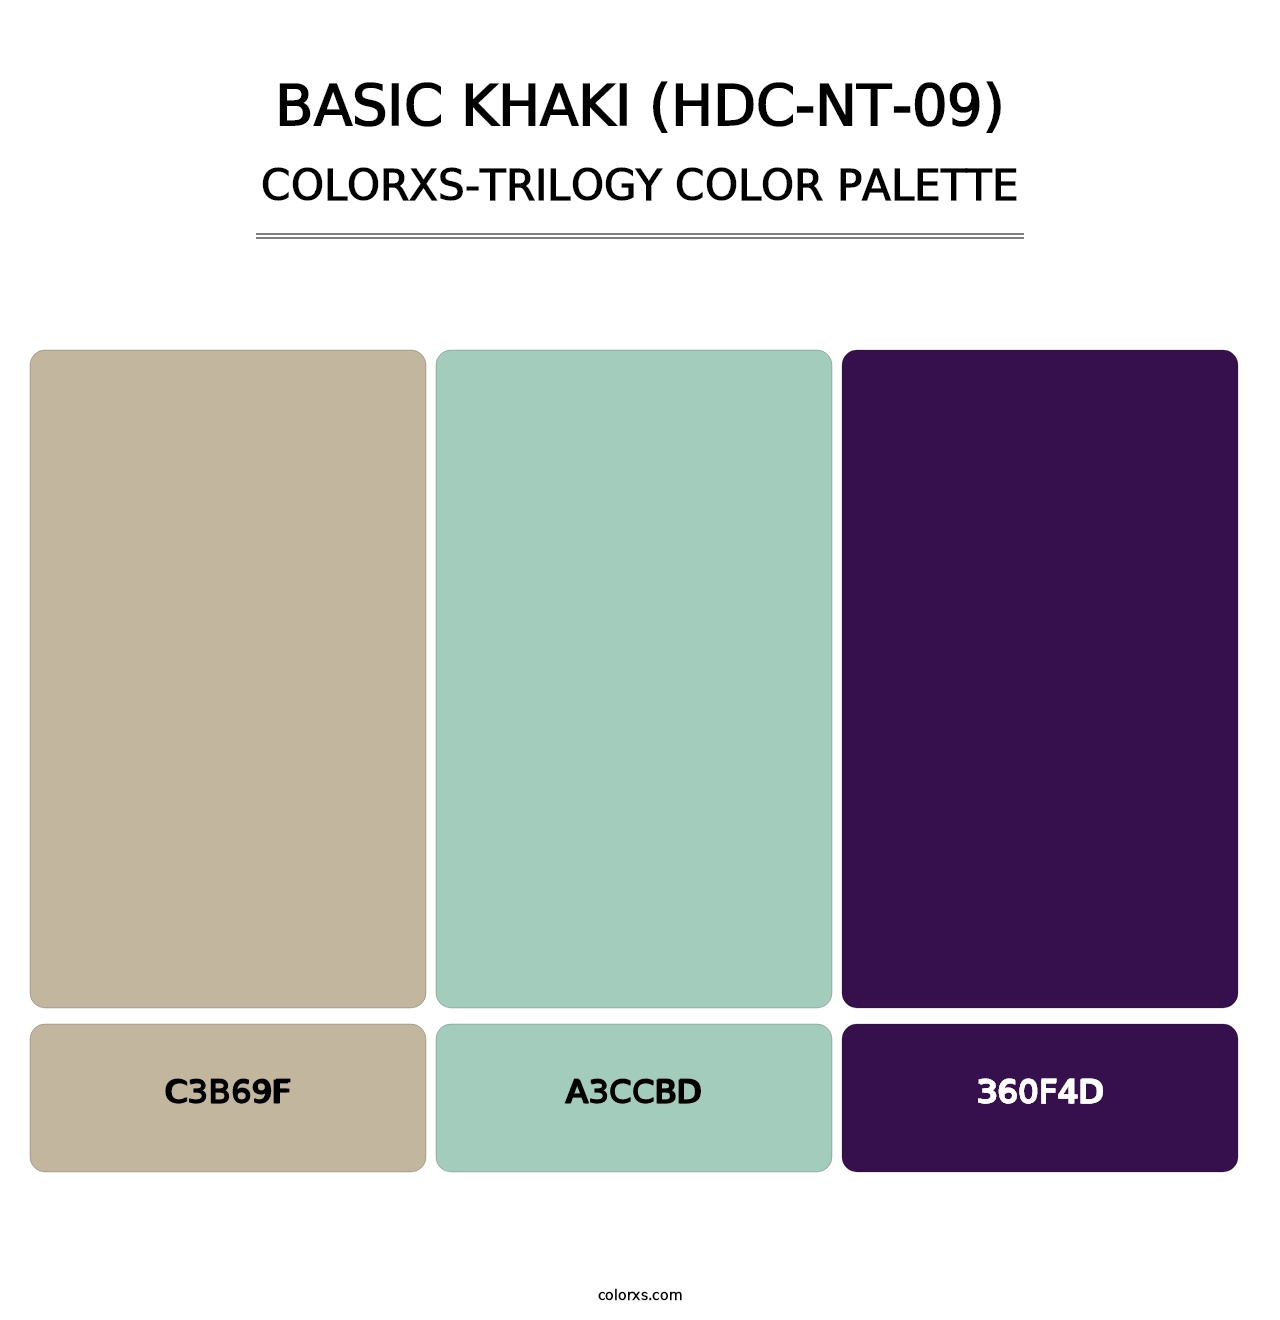 Basic Khaki (HDC-NT-09) - Colorxs Trilogy Palette